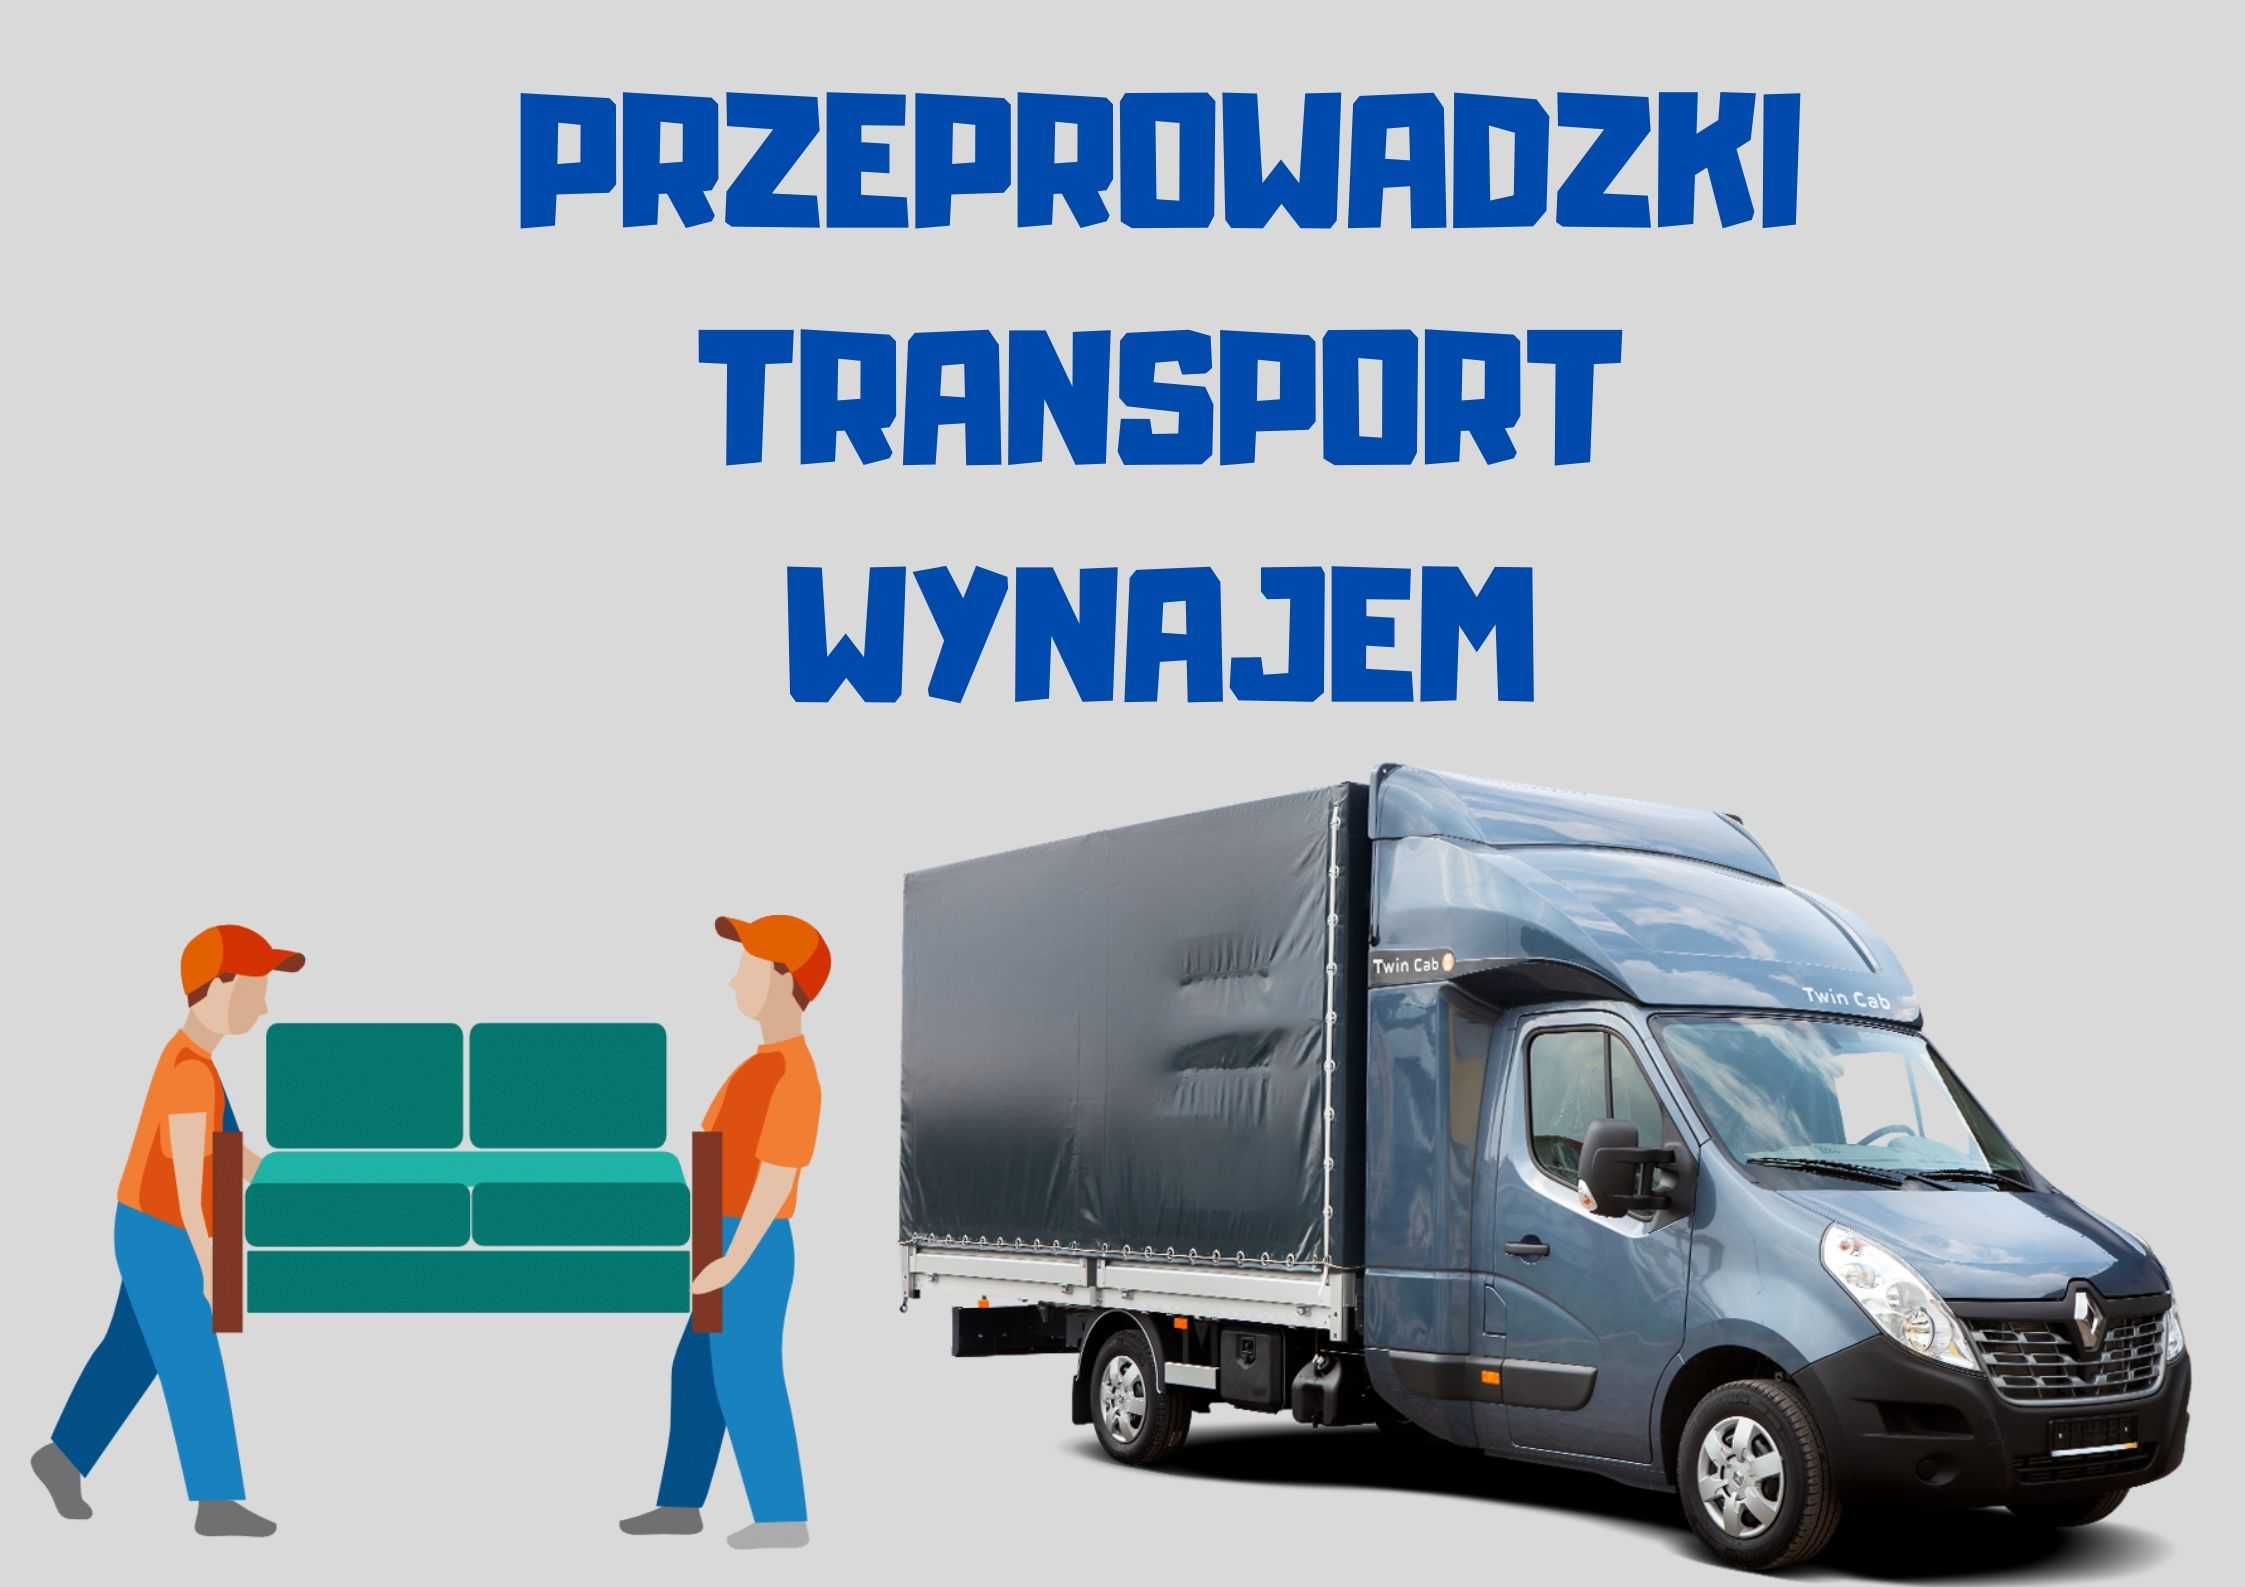 Przeprowadzki/Transport/Bus/Plandeka/wynajem Sosnowiec • OLX.pl